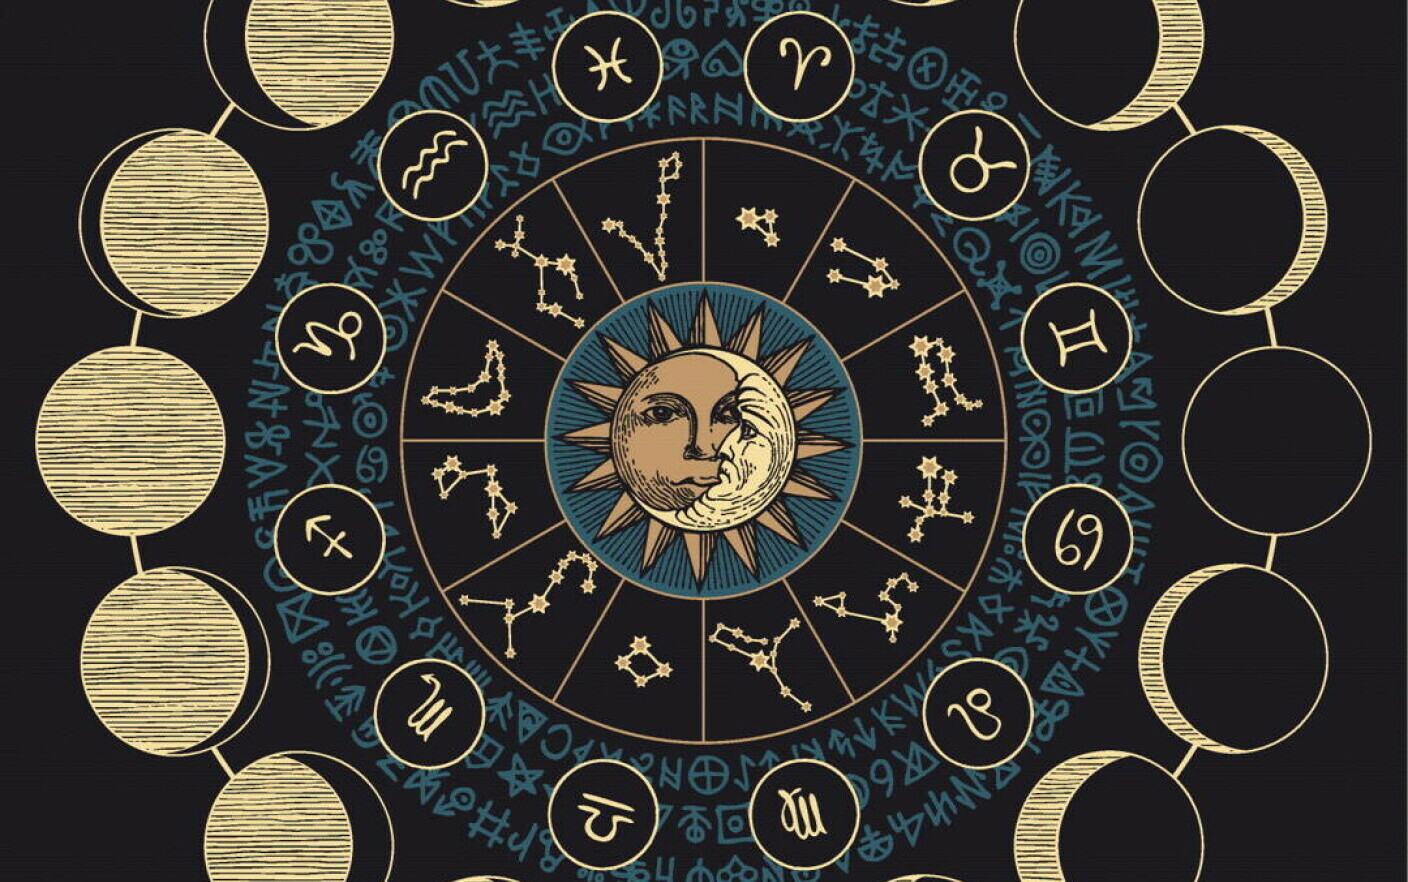 Luna Noua horoscop